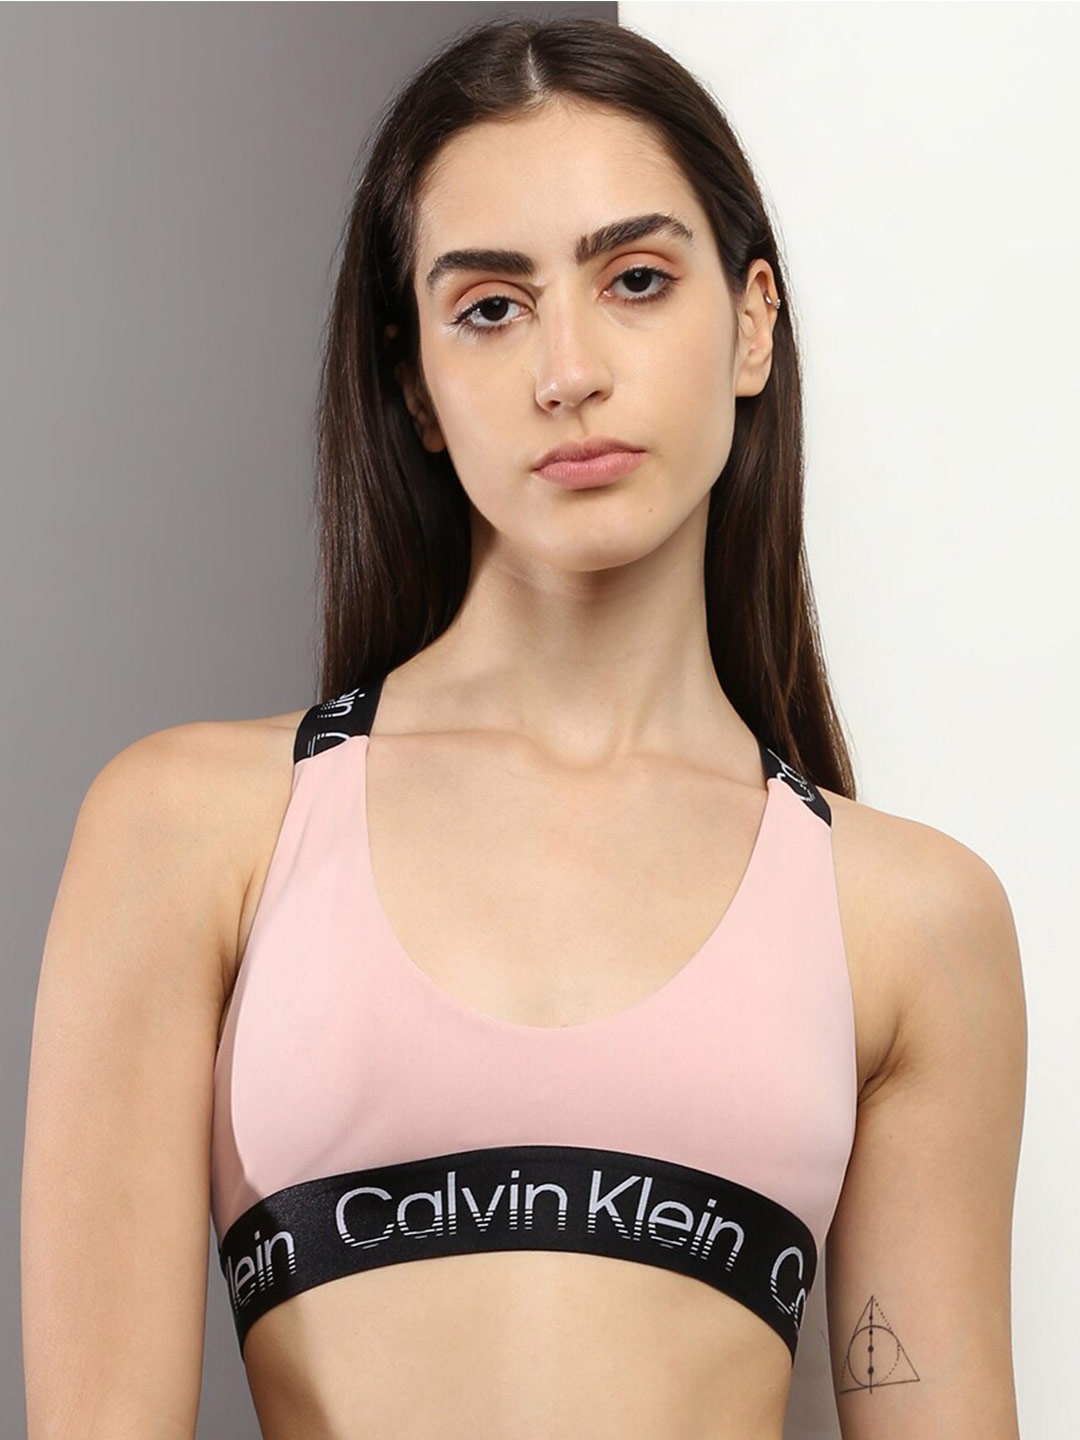 Buy Calvin Klein Underwear Non Padded Medium Support All Day